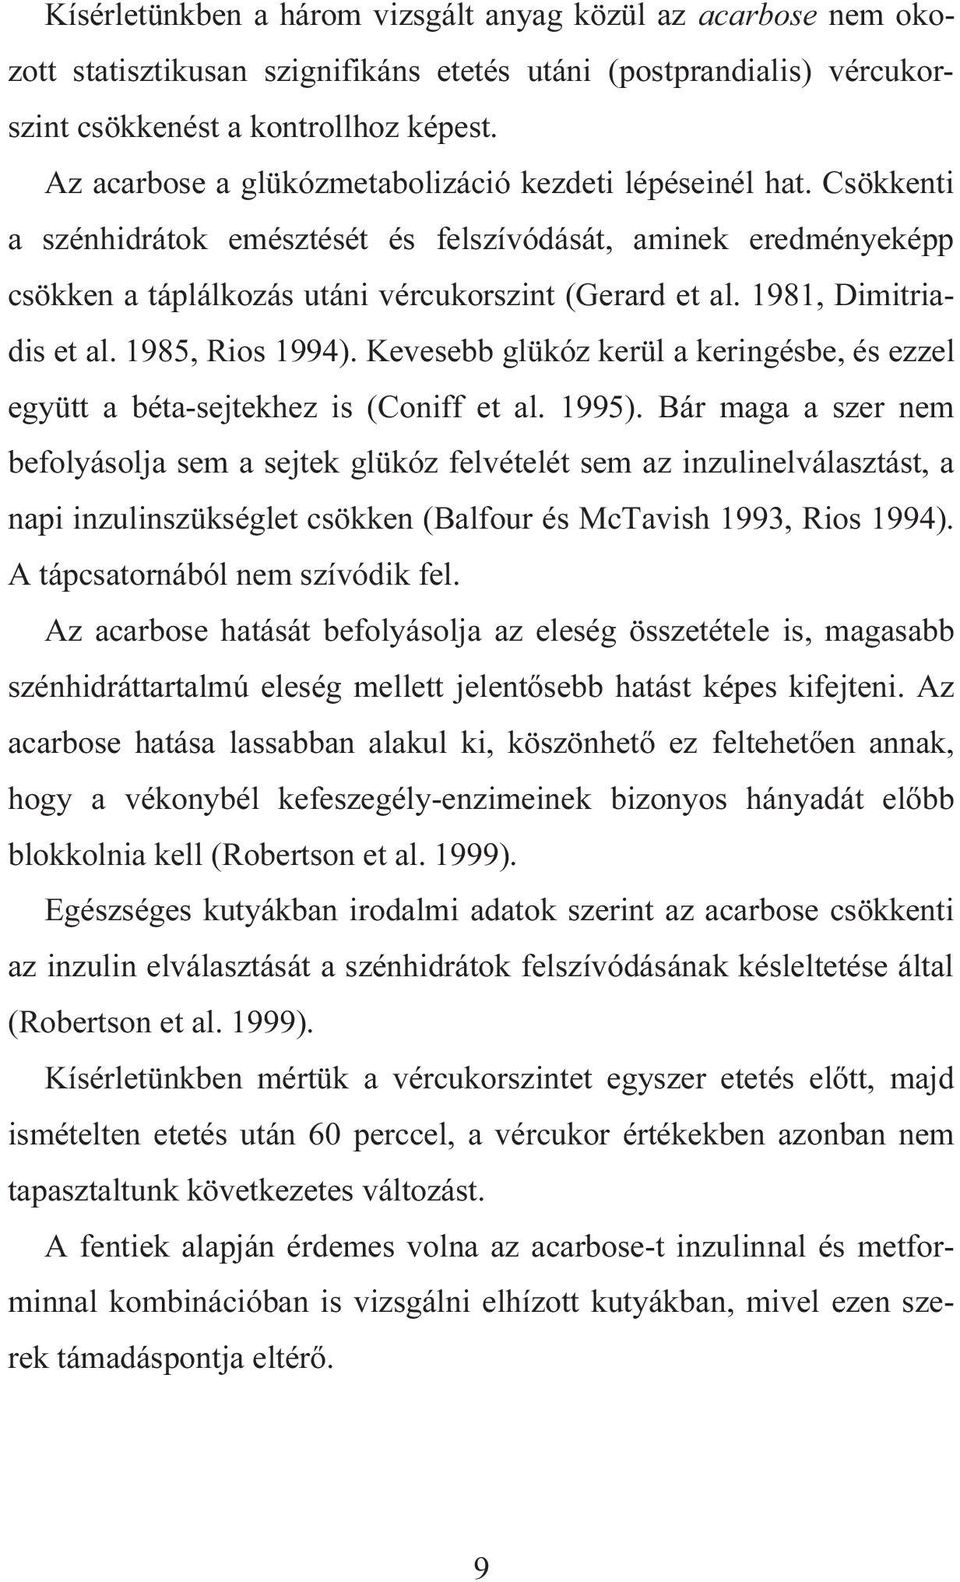 1981, Dimitriadis et al. 1985, Rios 1994). Kevesebb glükóz kerül a keringésbe, és ezzel együtt a béta-sejtekhez is (Coniff et al. 1995).